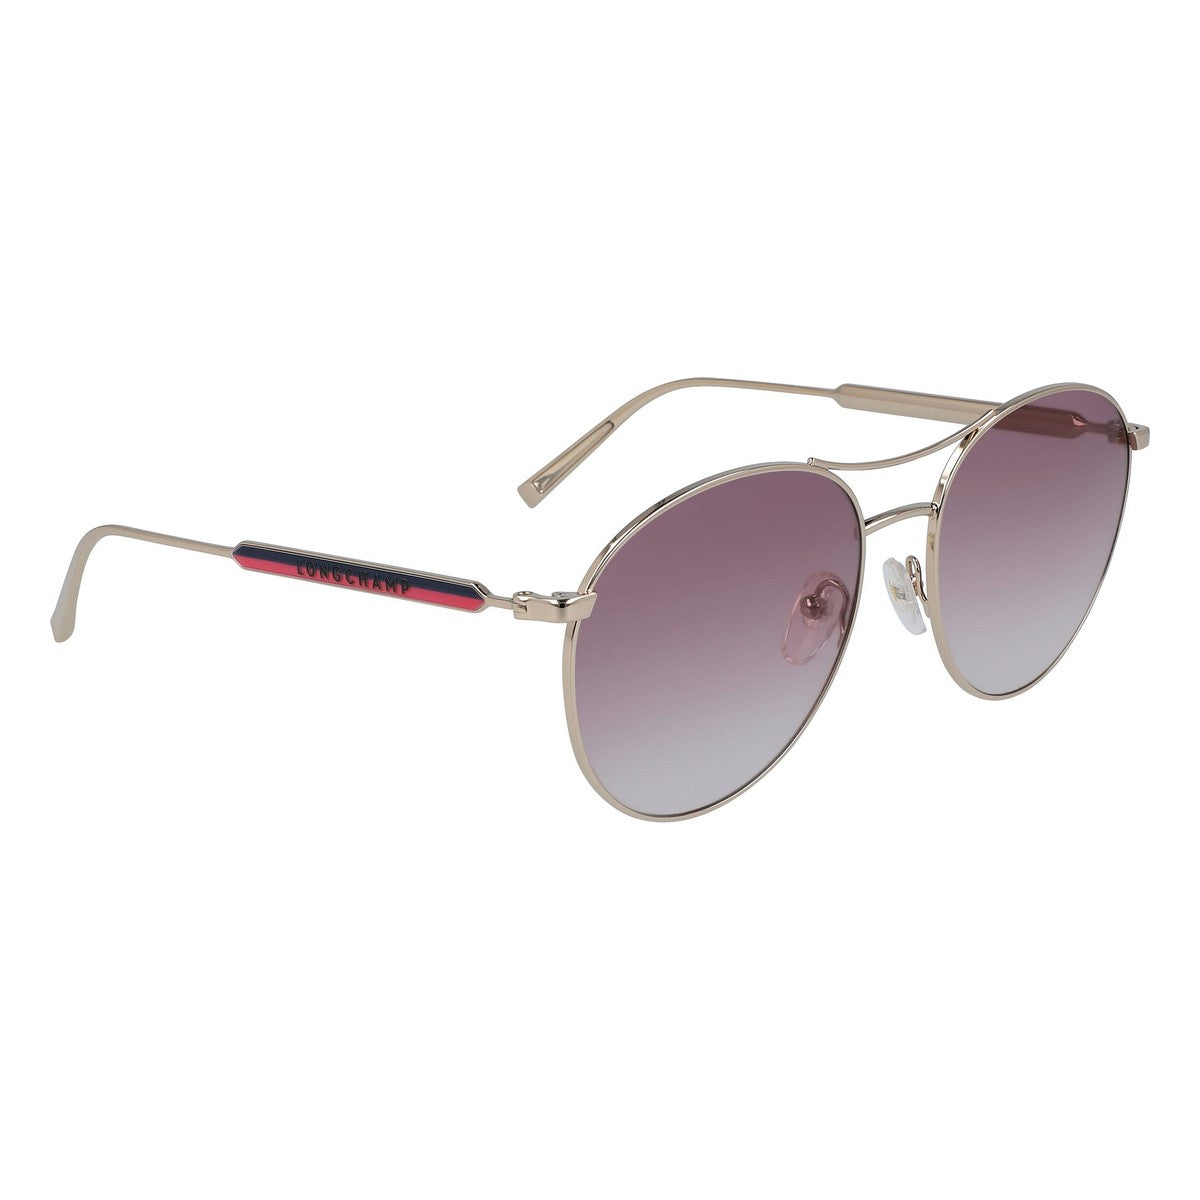 Kaufe Damensonnenbrille Longchamp LO133S-59722 ø 59 mm bei AWK Flagship um € 71.00